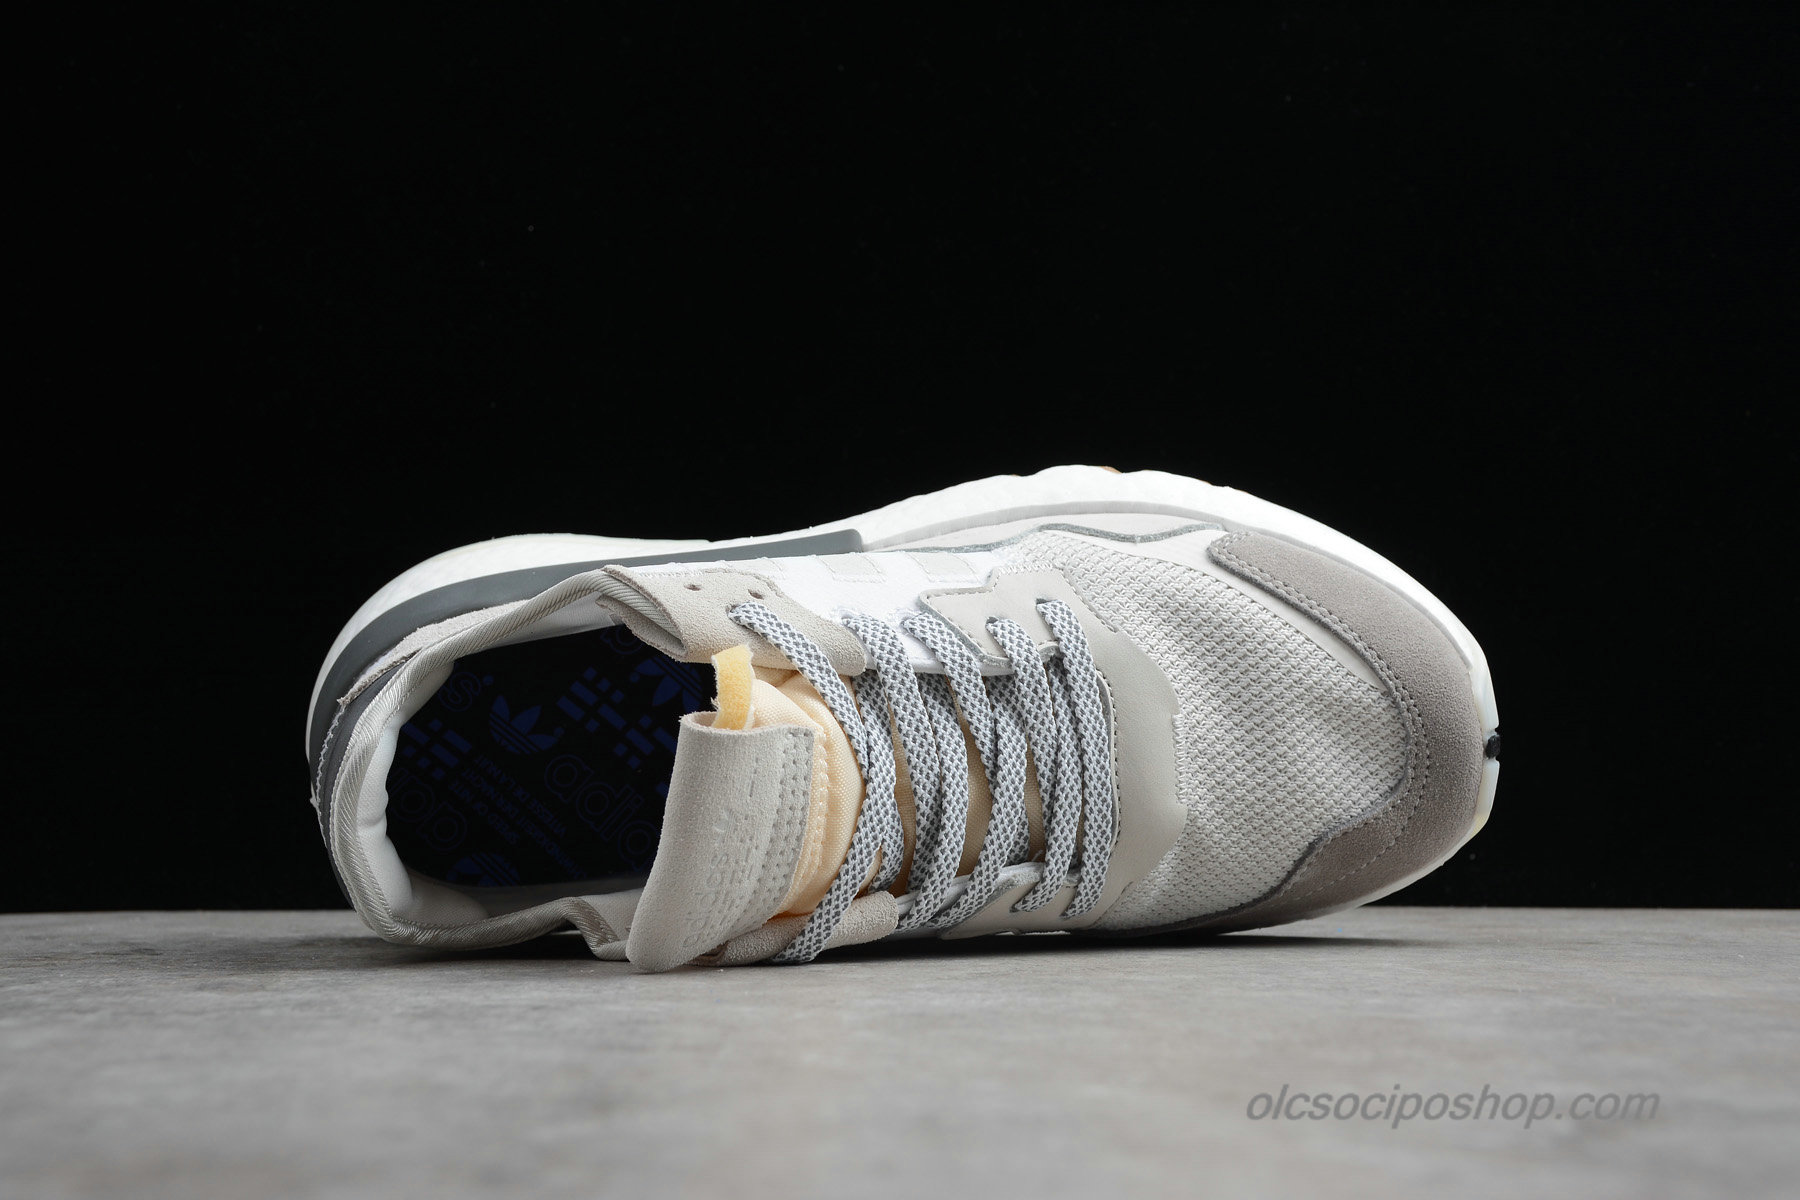 Adidas Nite Jogger 2019 Boost 3M Homok/Fehér/Szürke Cipők (CG5950) - Kattintásra bezárul